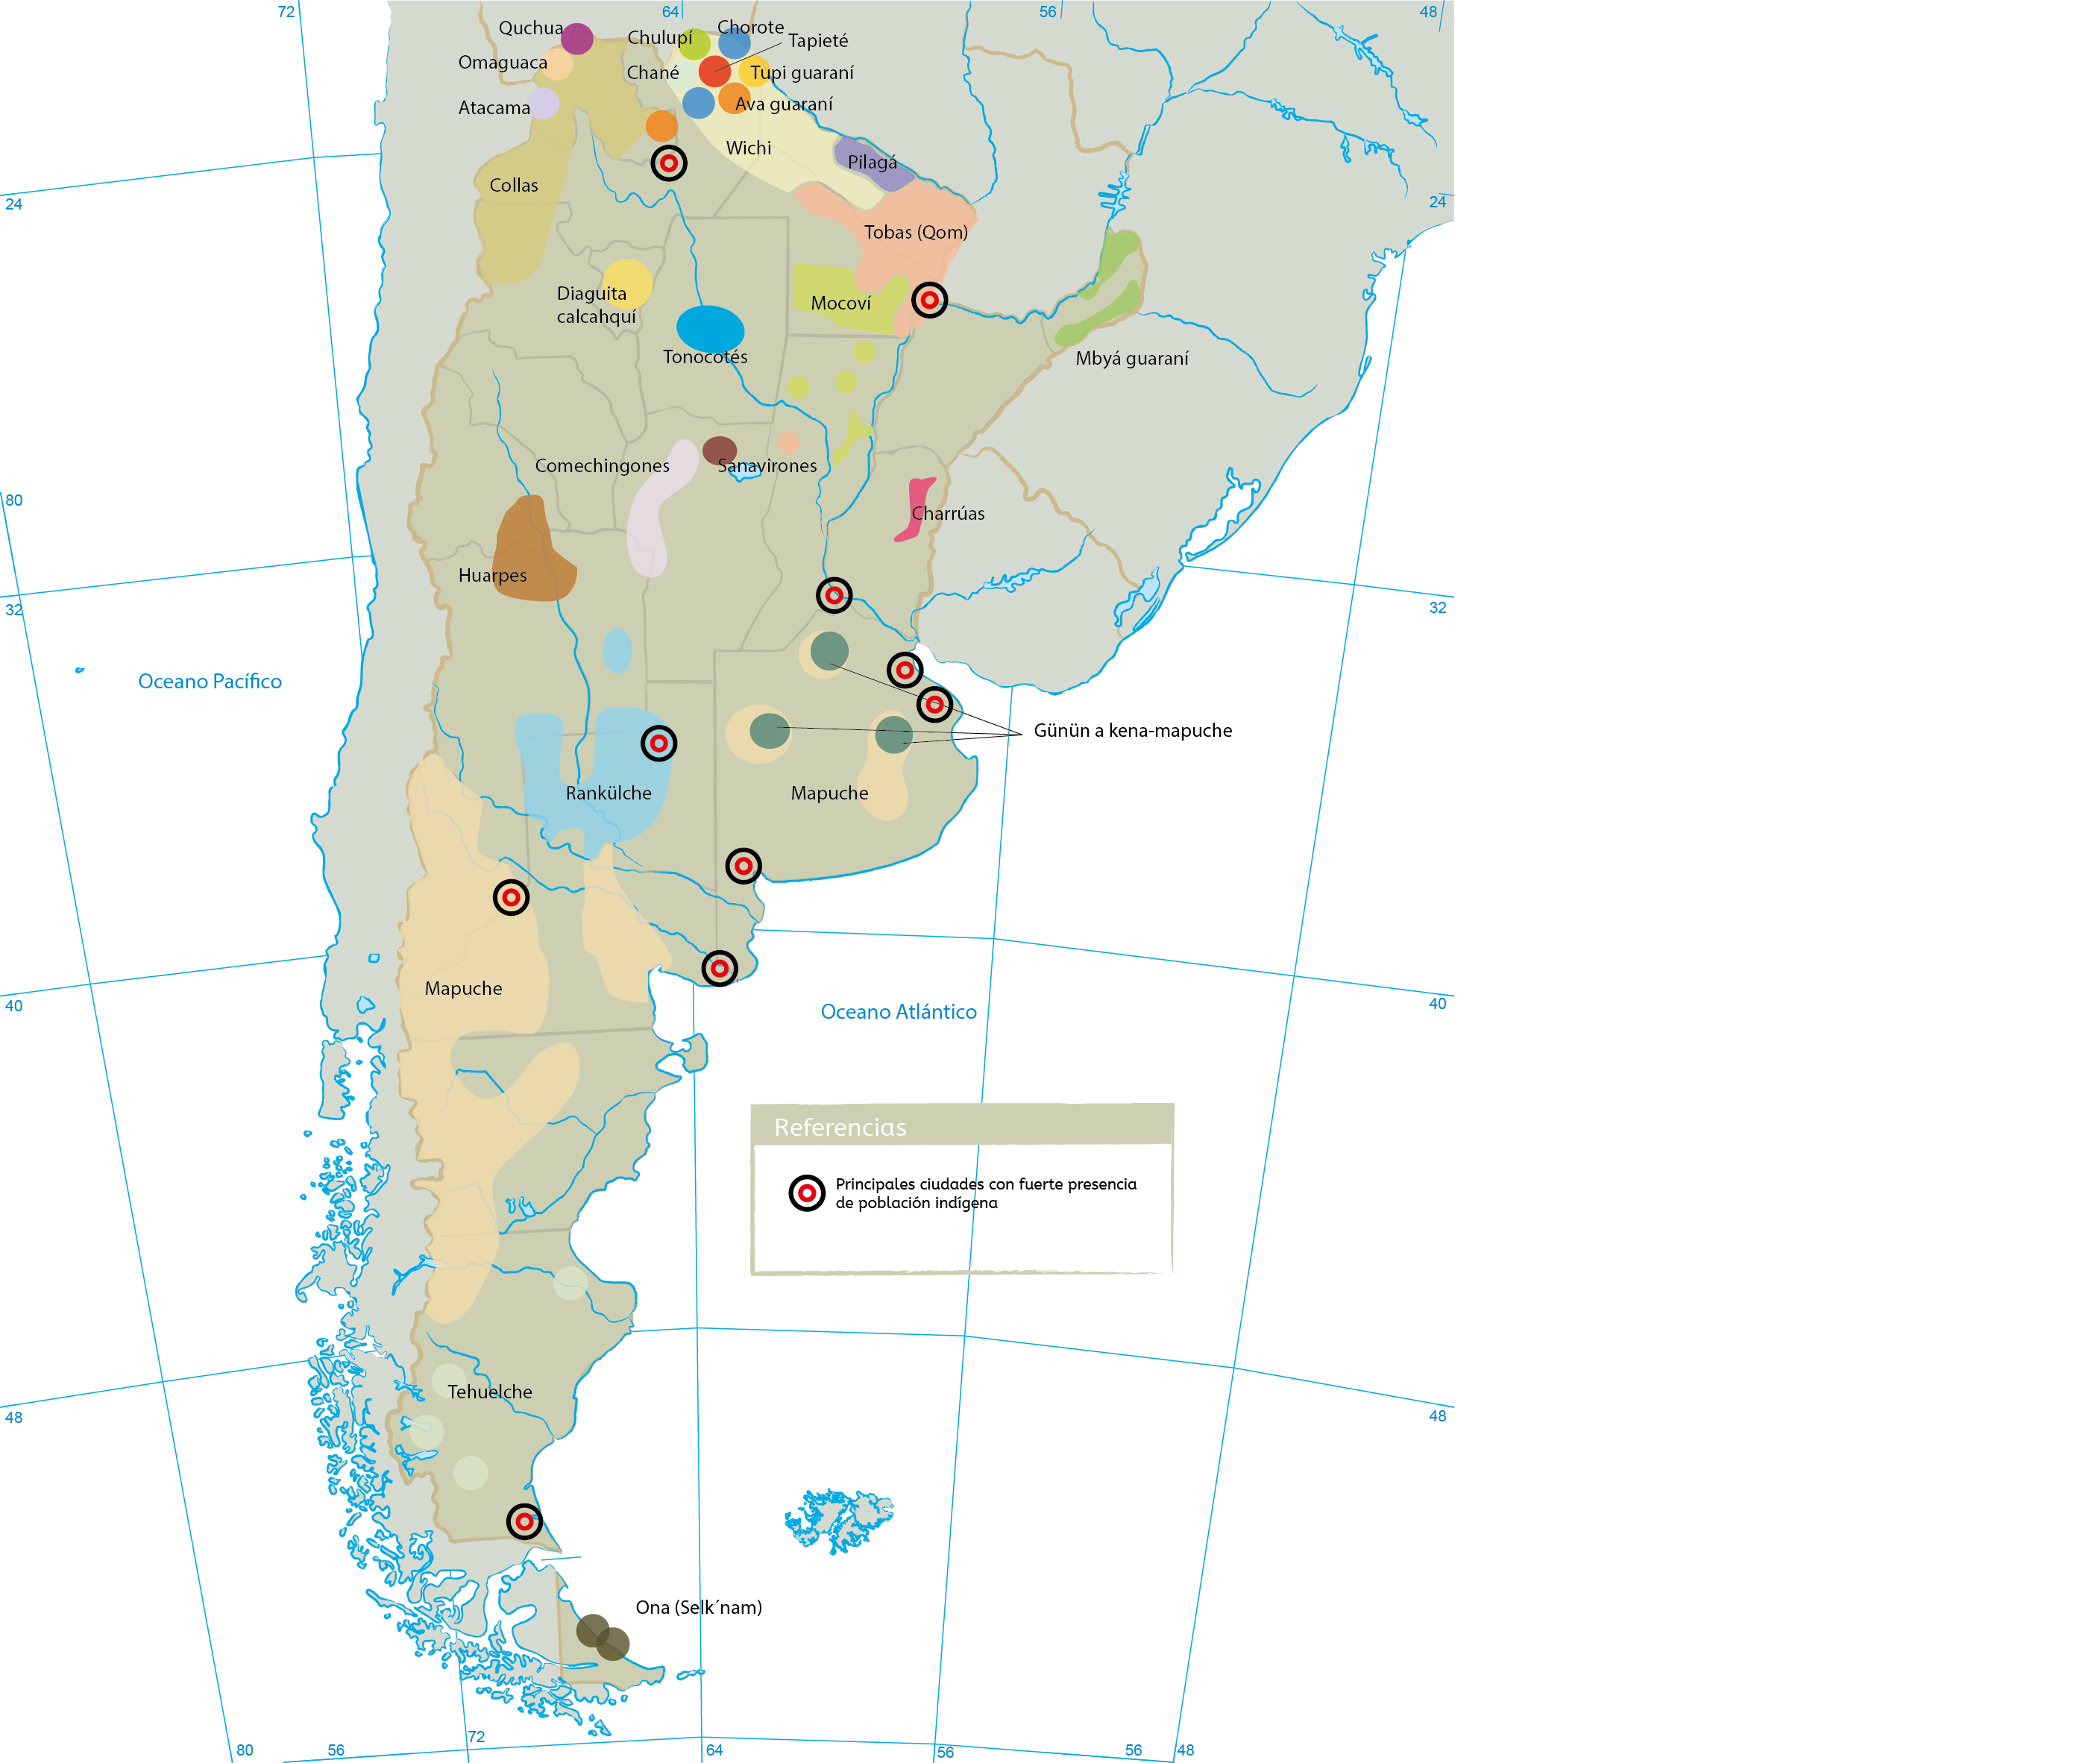 Pueblos Originarios del actual territorio  argentino al siglo XVI